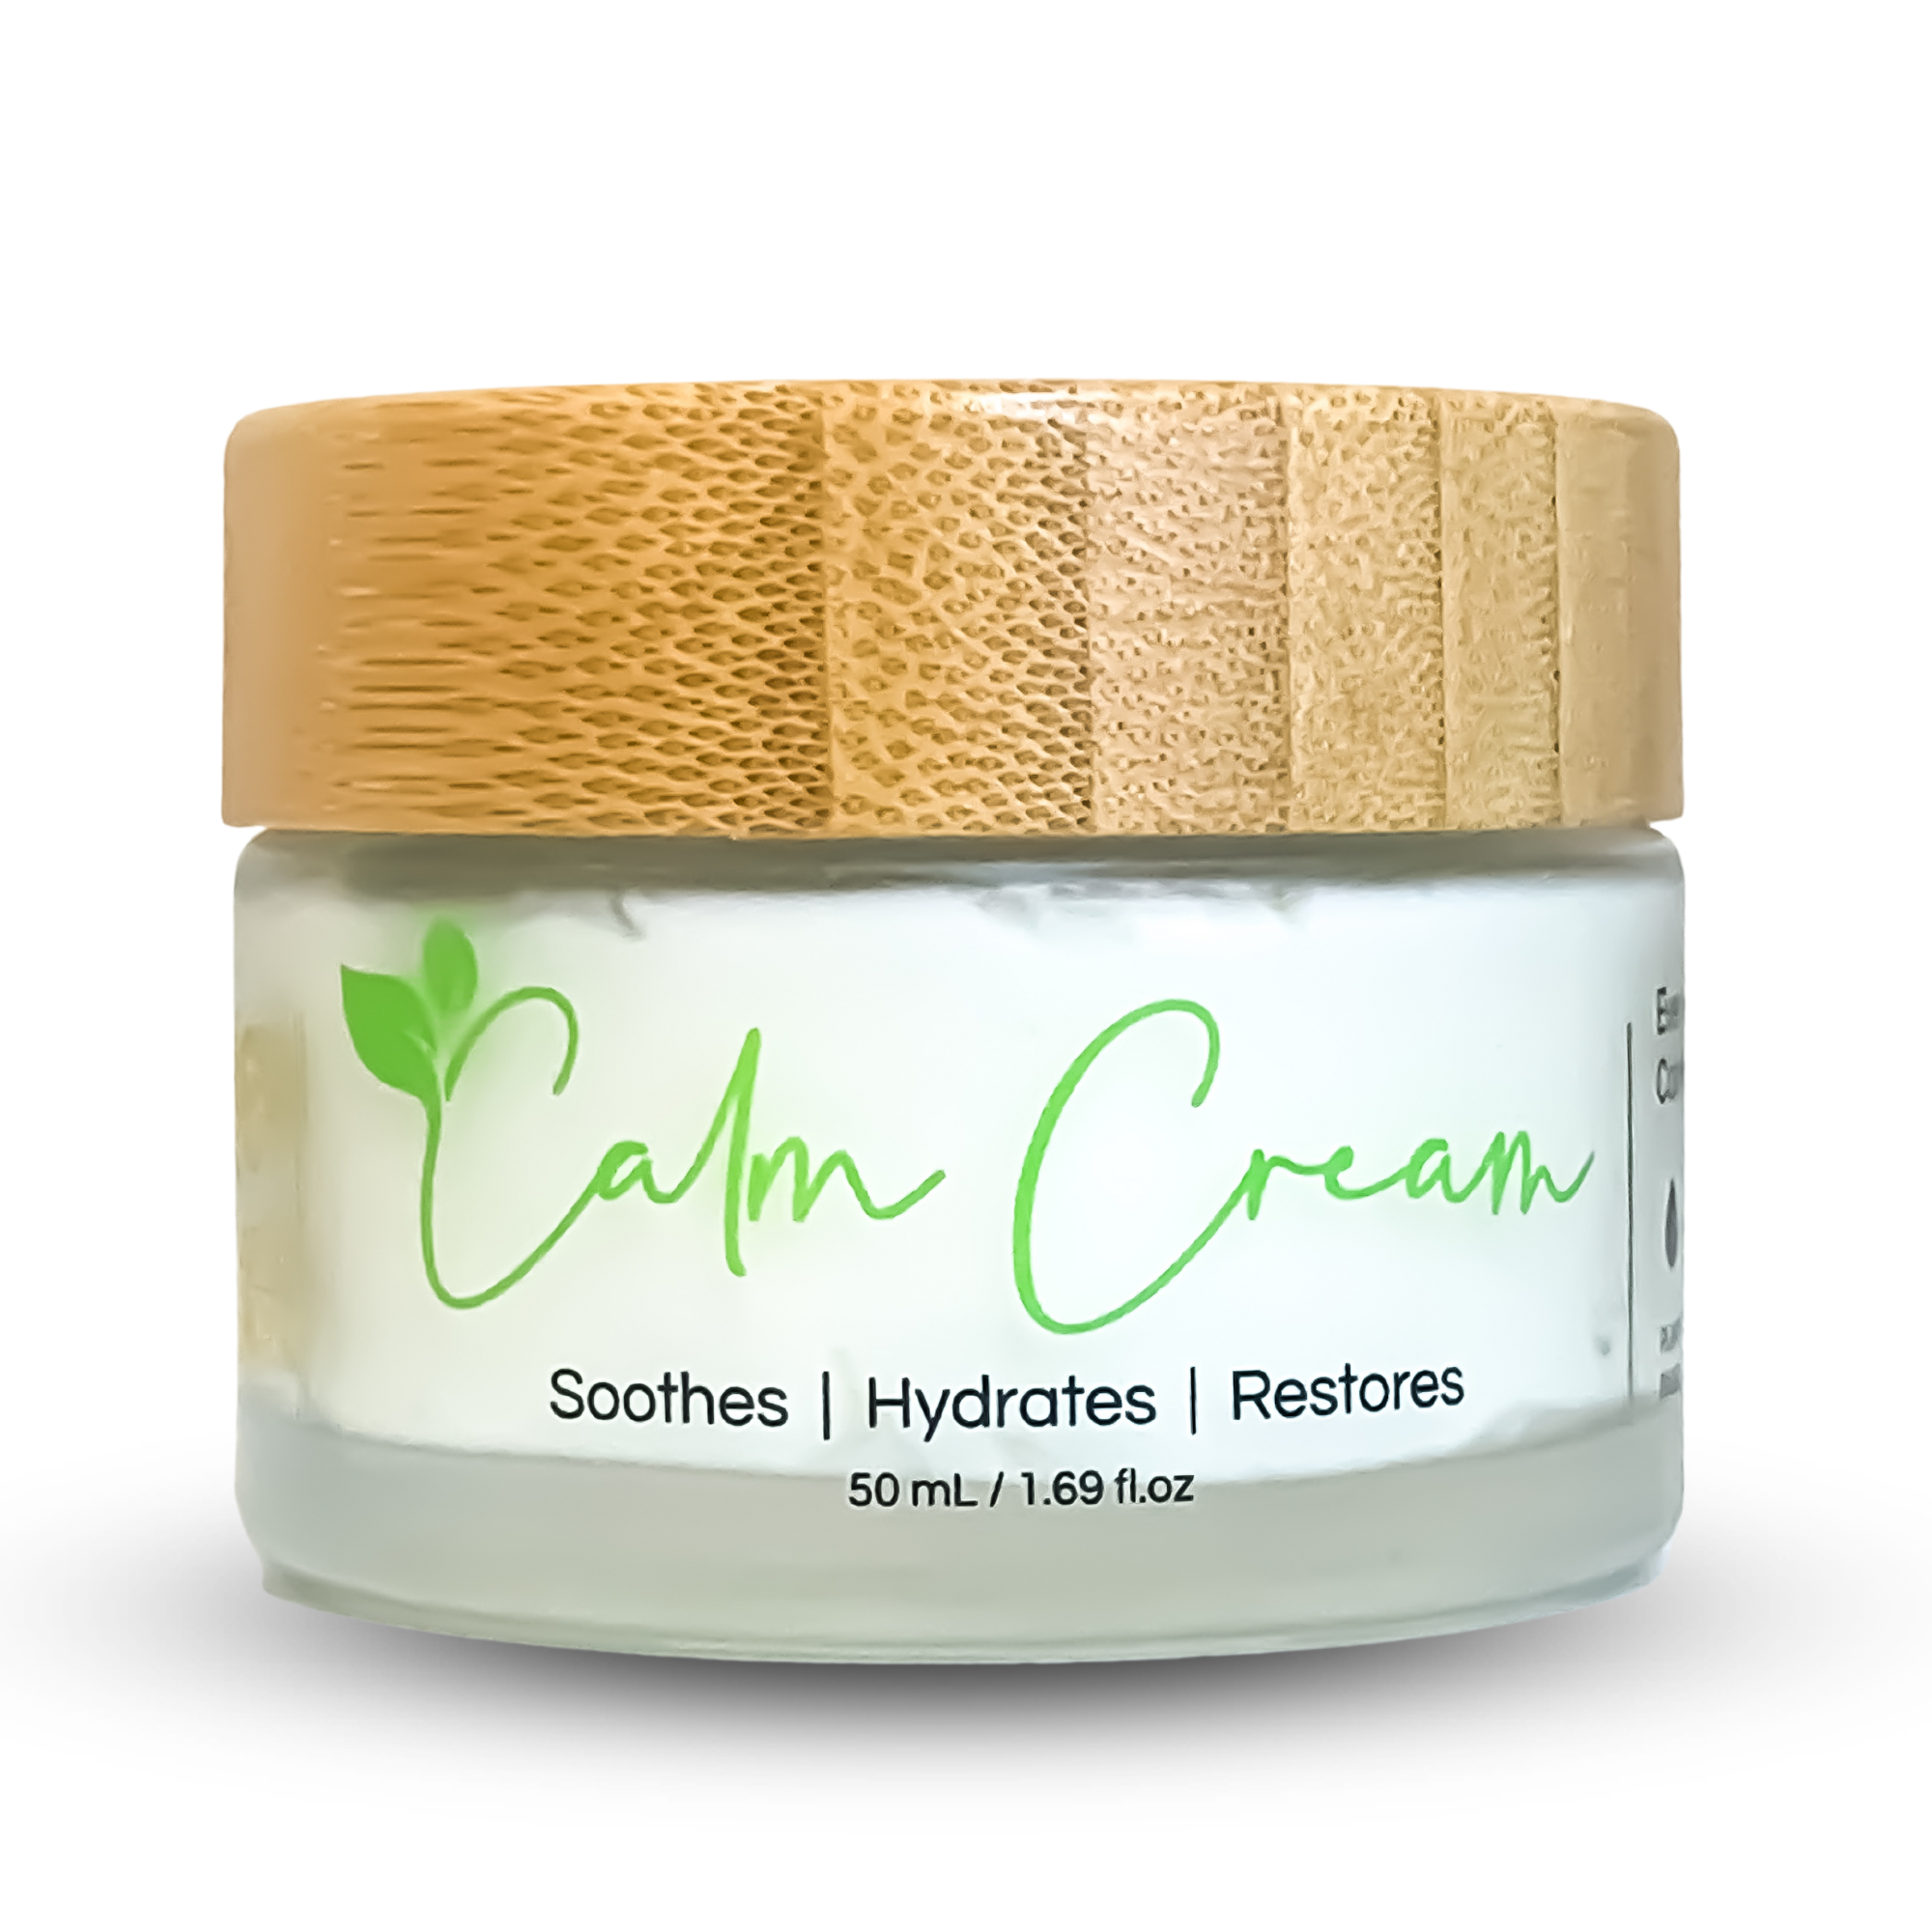 Calm Cream